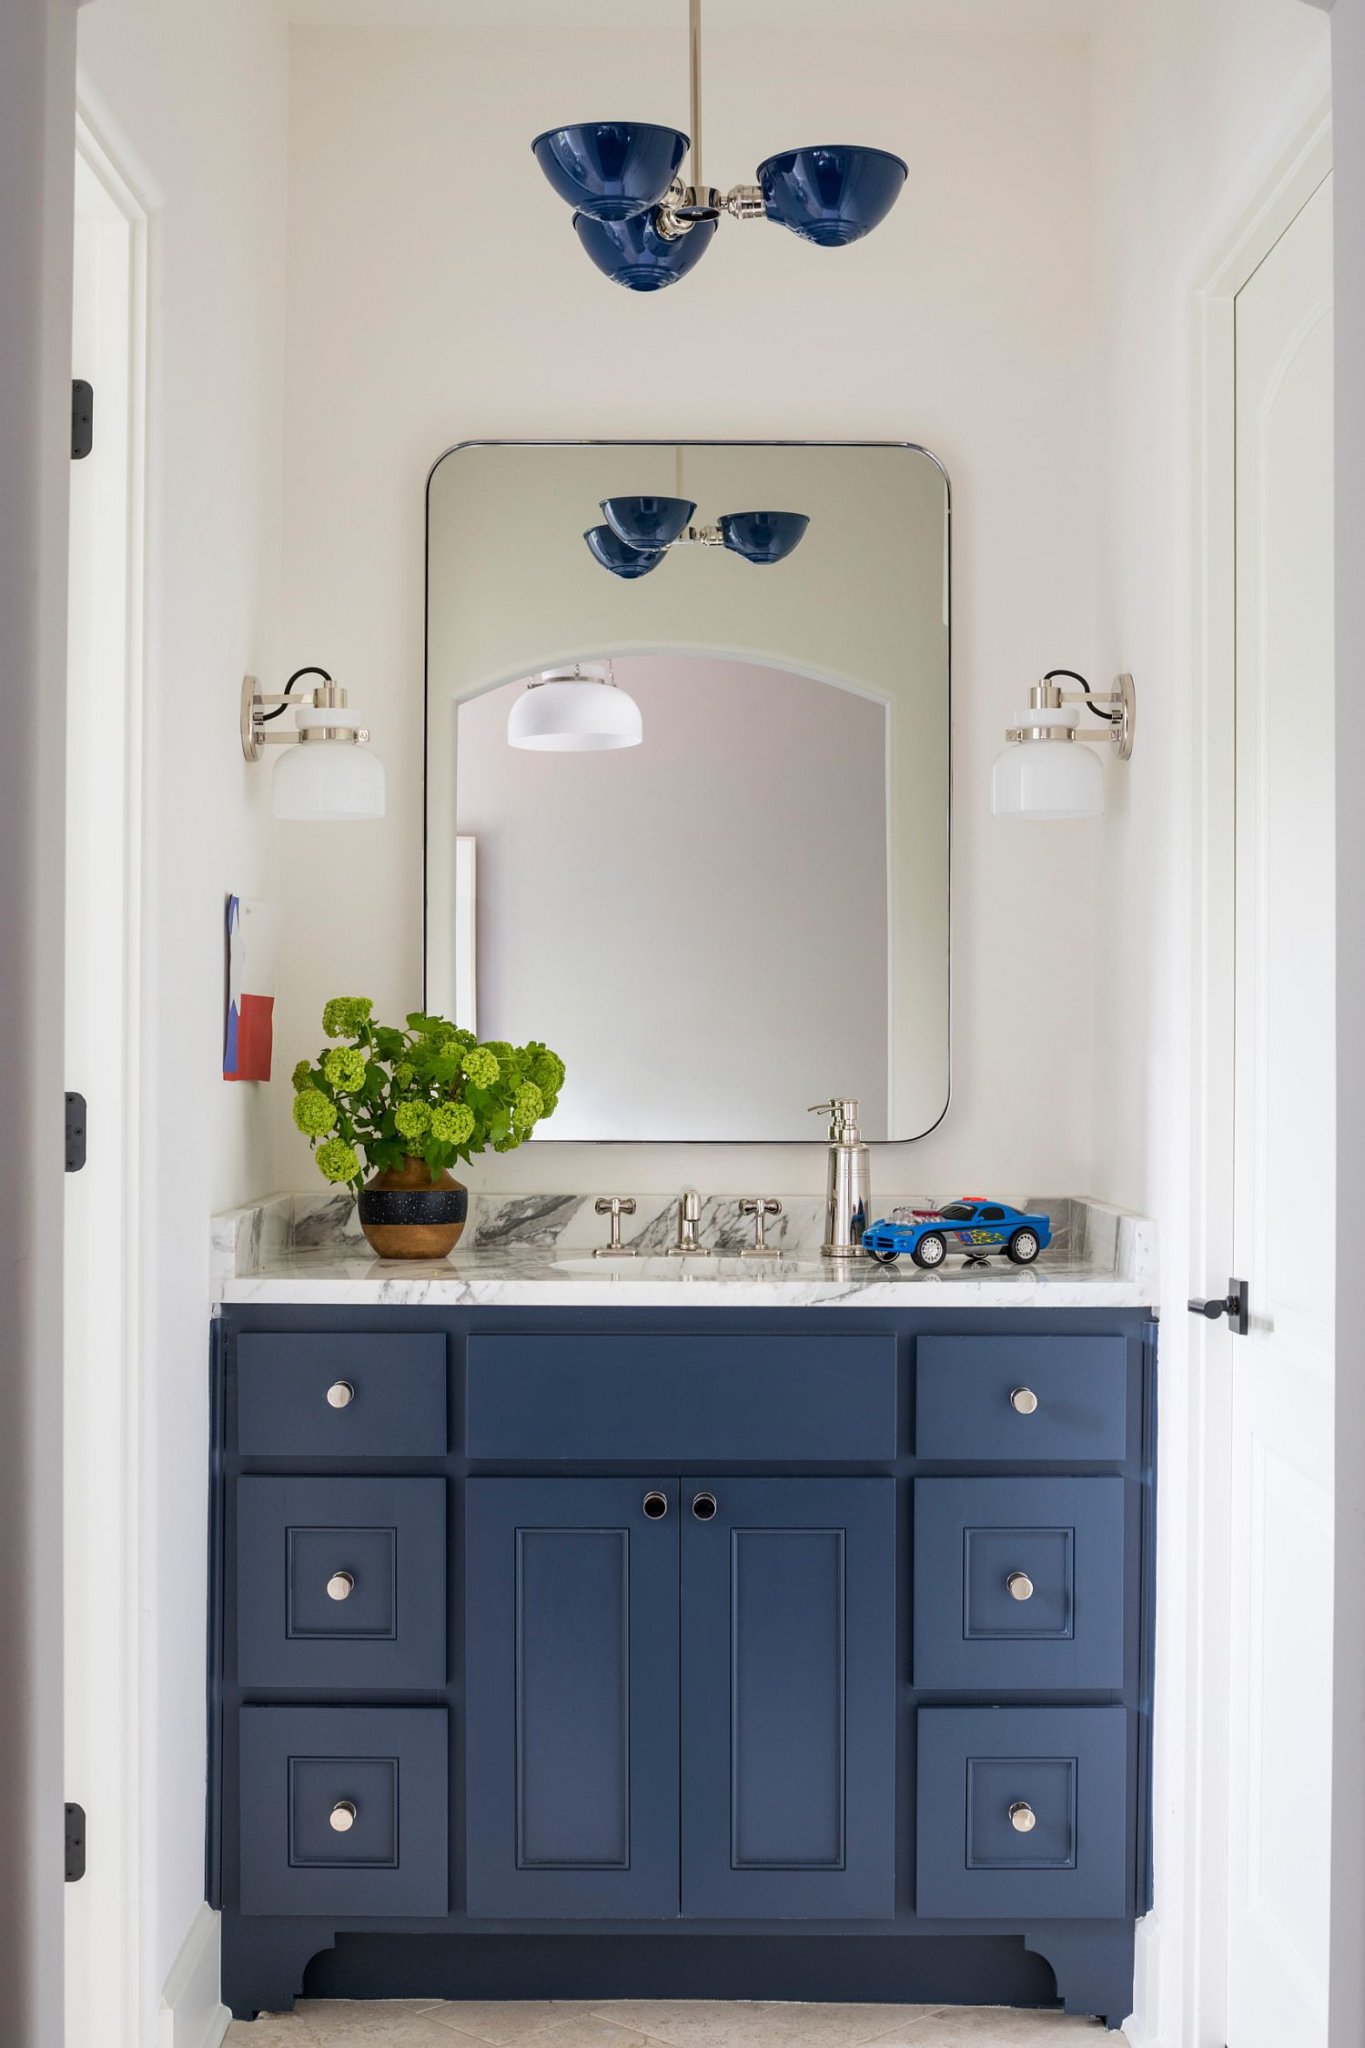 Hình ảnh phòng tắm nhỏ màu trắng chủ đạo, tủ đồ dưới bồn rửa màu xanh nổi bật